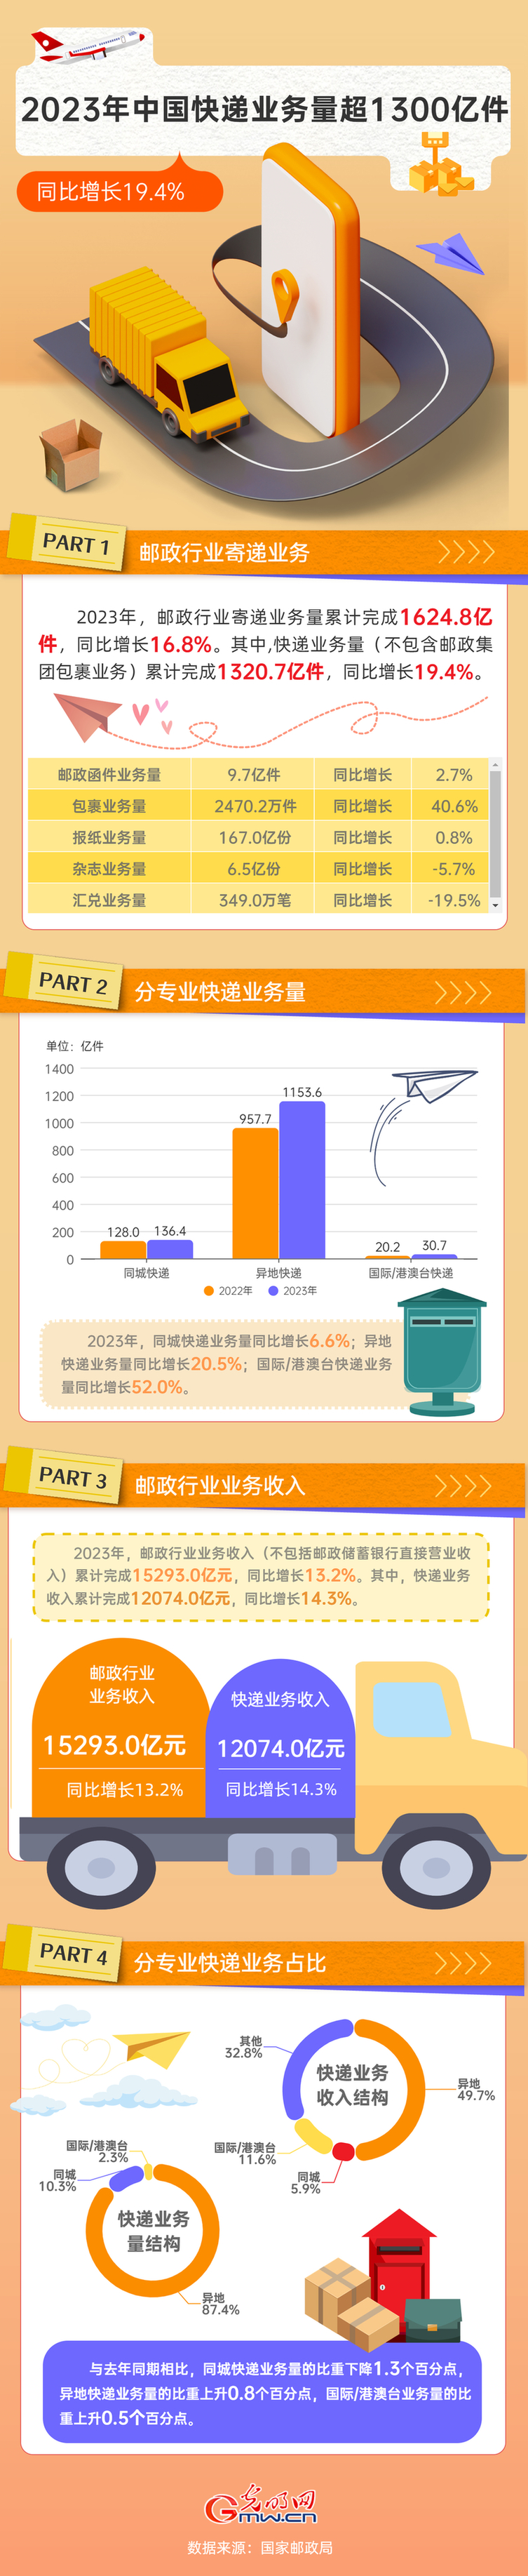 2023中国经济年报丨2023年中国快递业务量完成超1300亿件